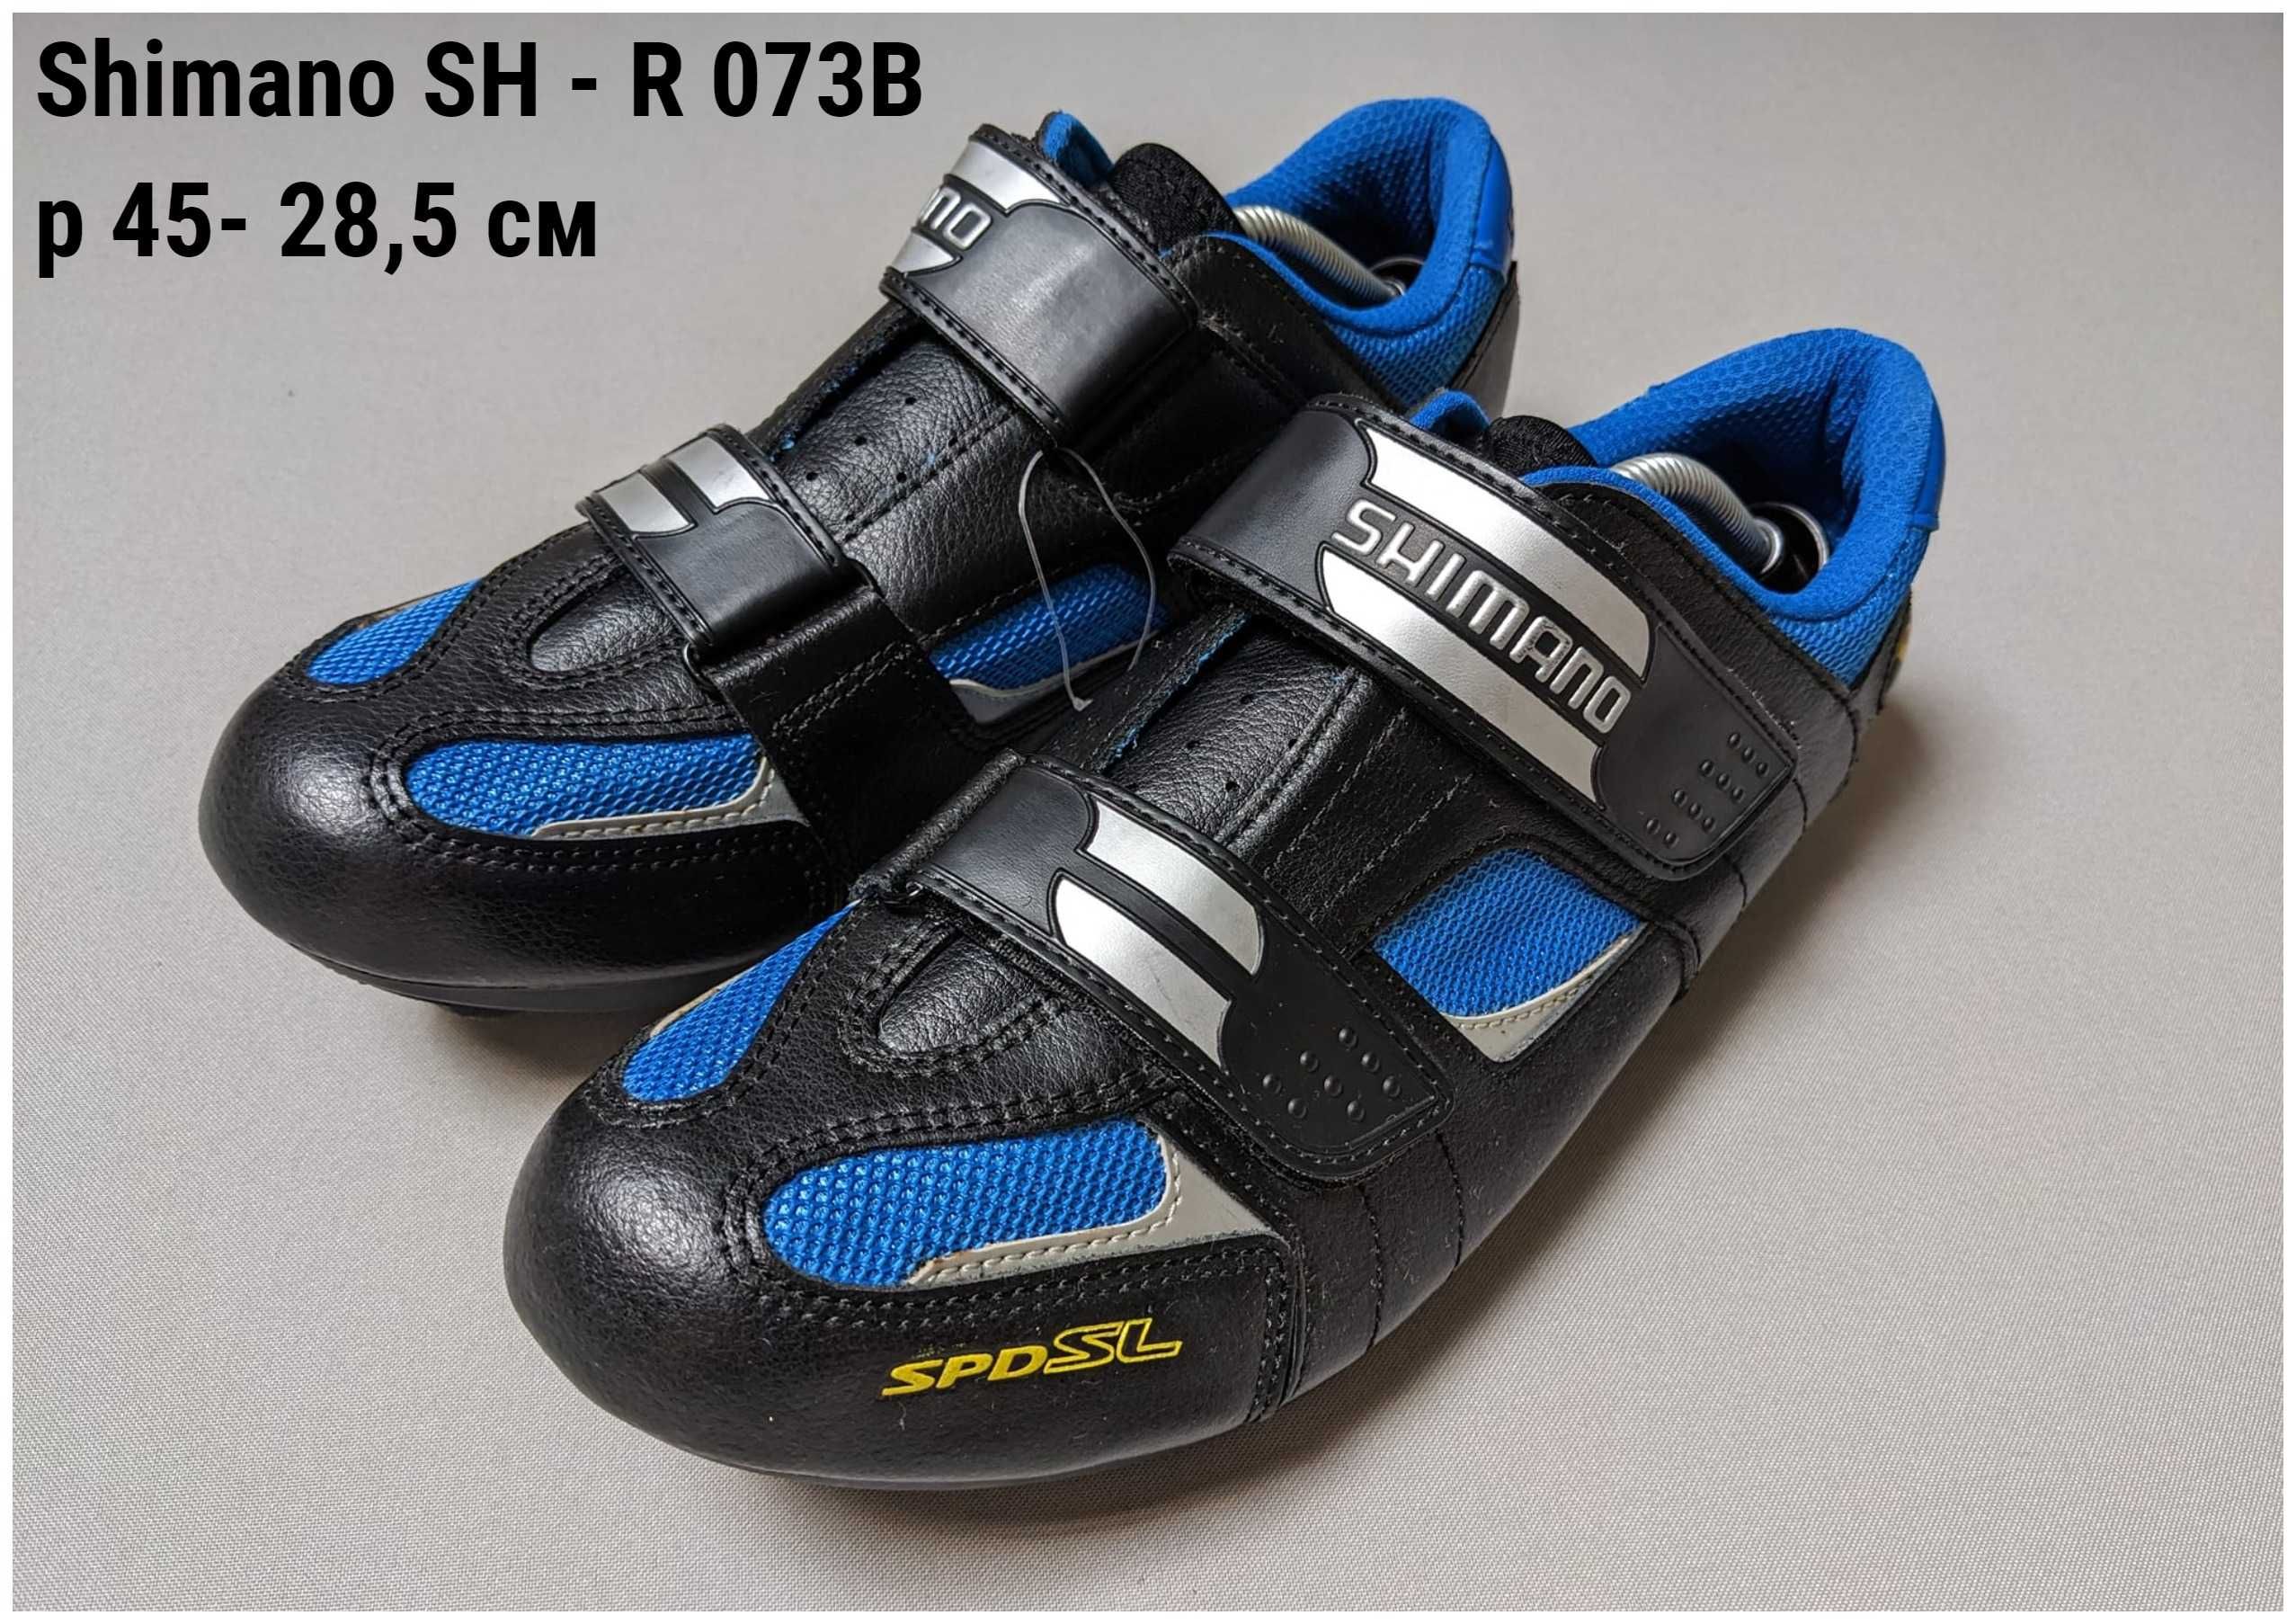 Фірмові кросівки SHIMANO для контактних педалей SPD, 7 моделей